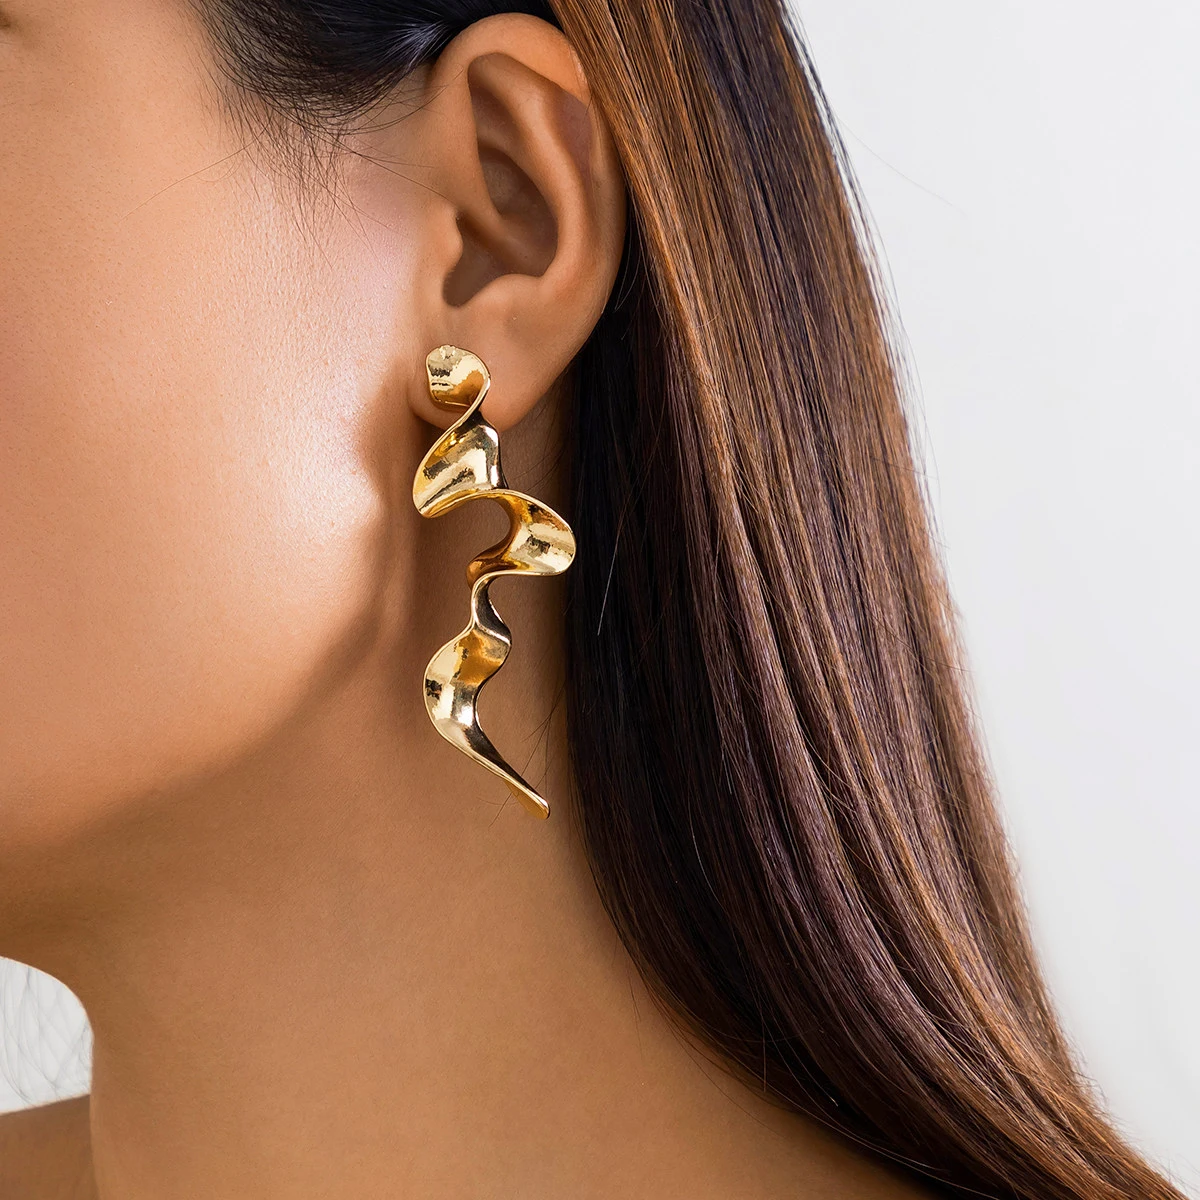 

Vintage Irregular Geometric Long Wave Pendant Drop Earrings Women Fashion Statement Goth Piercing Earrings Jewelry Accessories